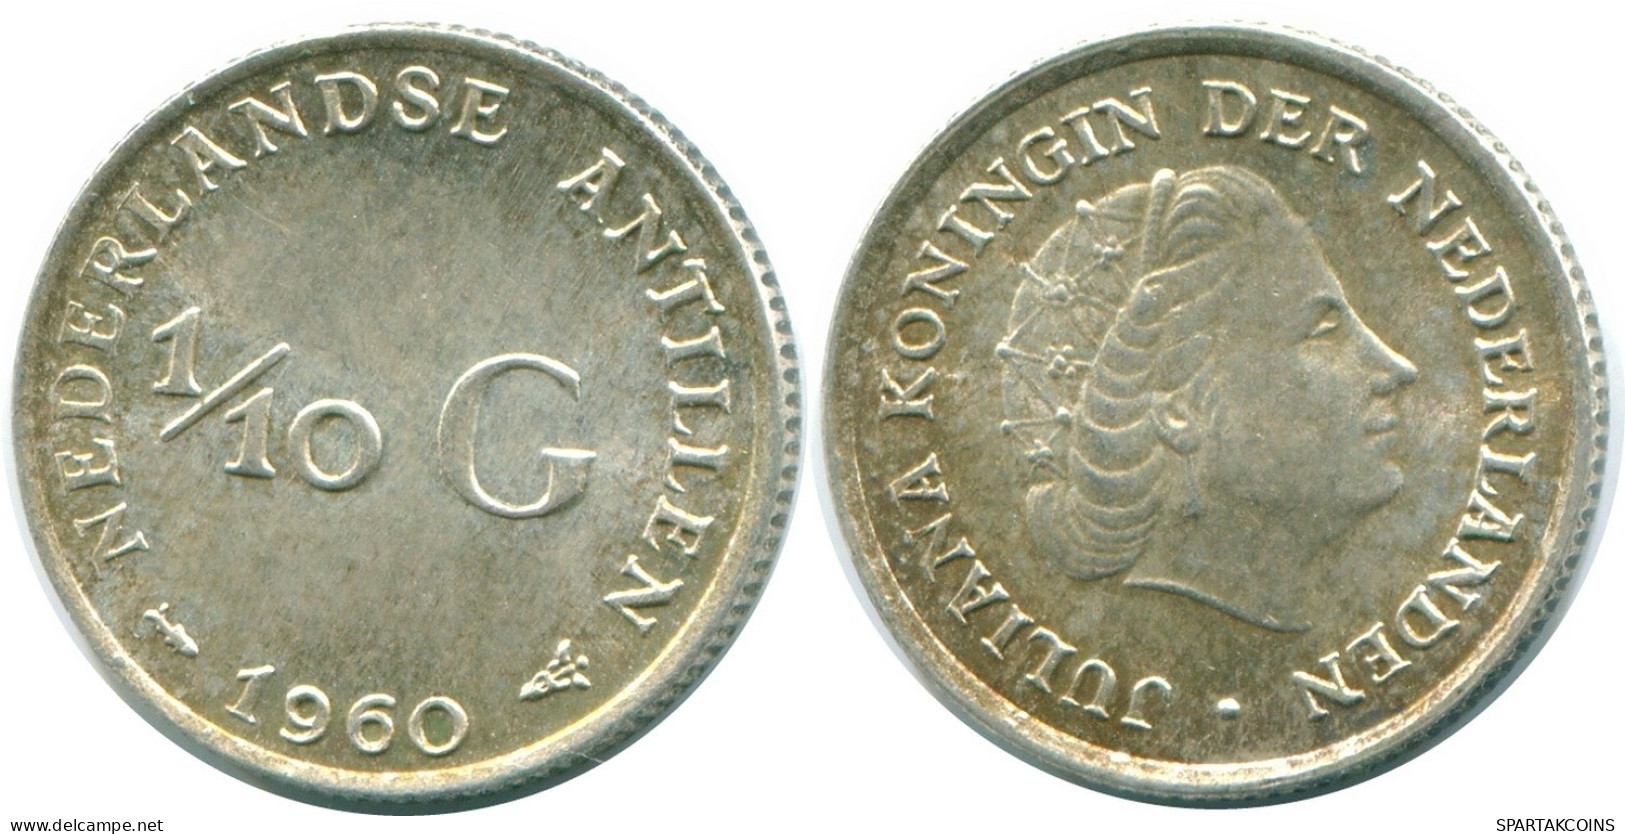 1/10 GULDEN 1960 NIEDERLÄNDISCHE ANTILLEN SILBER Koloniale Münze #NL12268.3.D.A - Antilles Néerlandaises